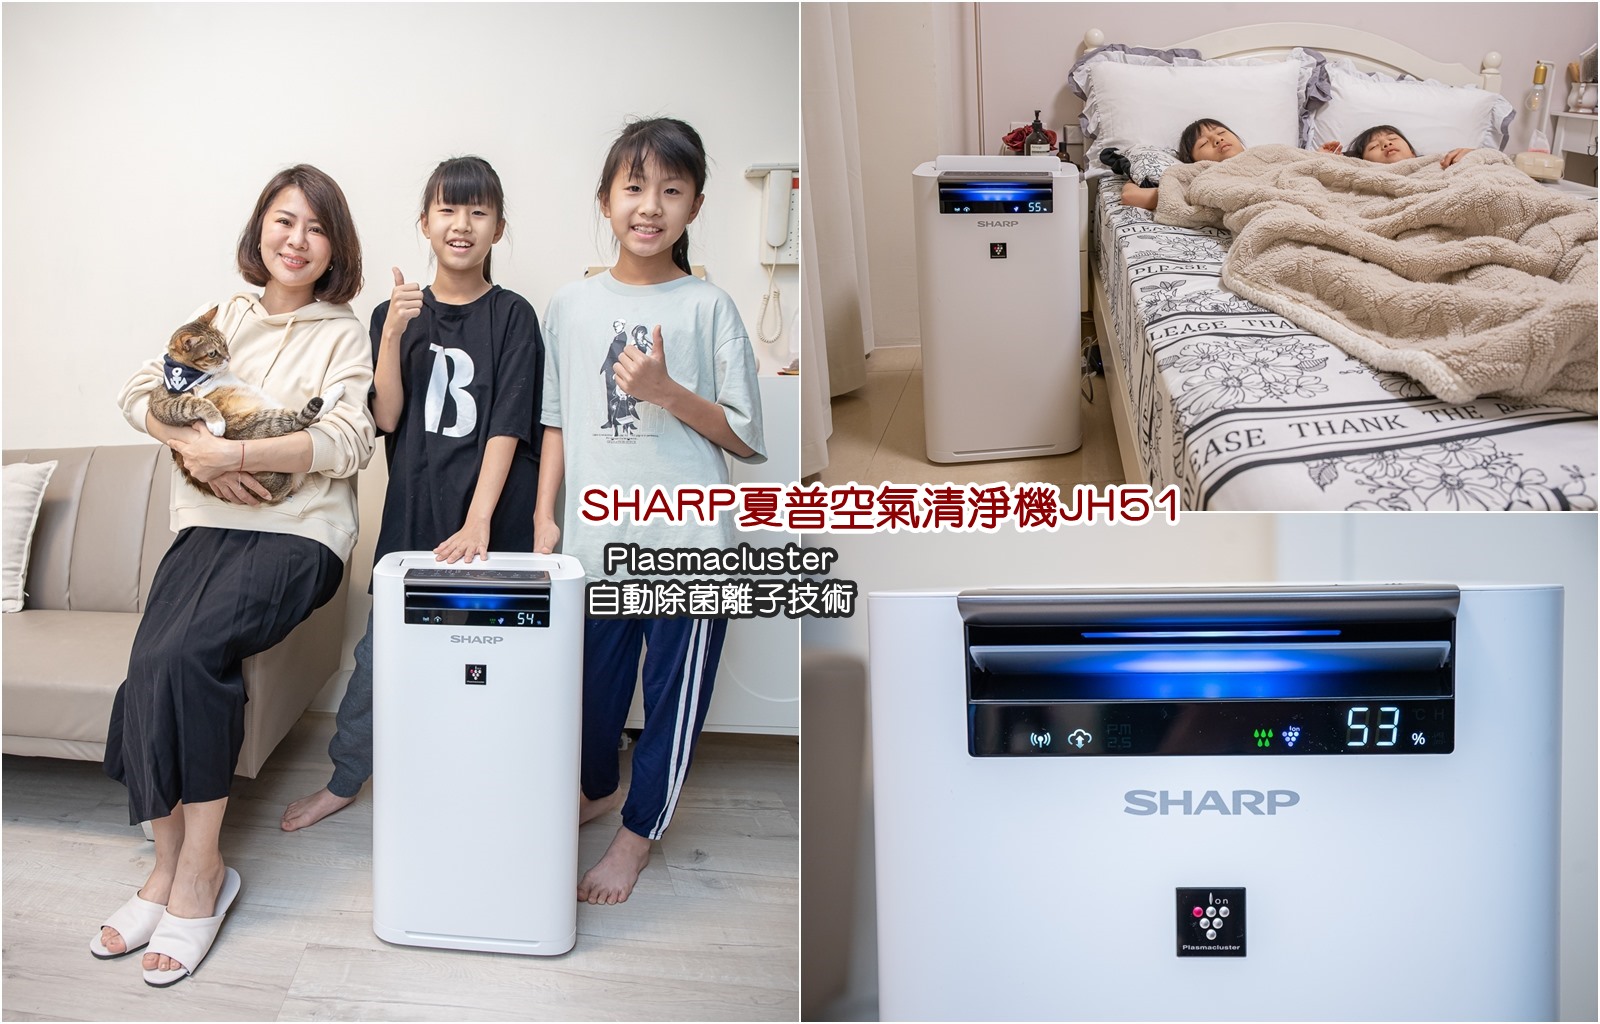 SHARP夏普空氣清淨機 JH51 日系家電第一首選  自動除菌離子技術太厲害啦!全球銷售 1 億台